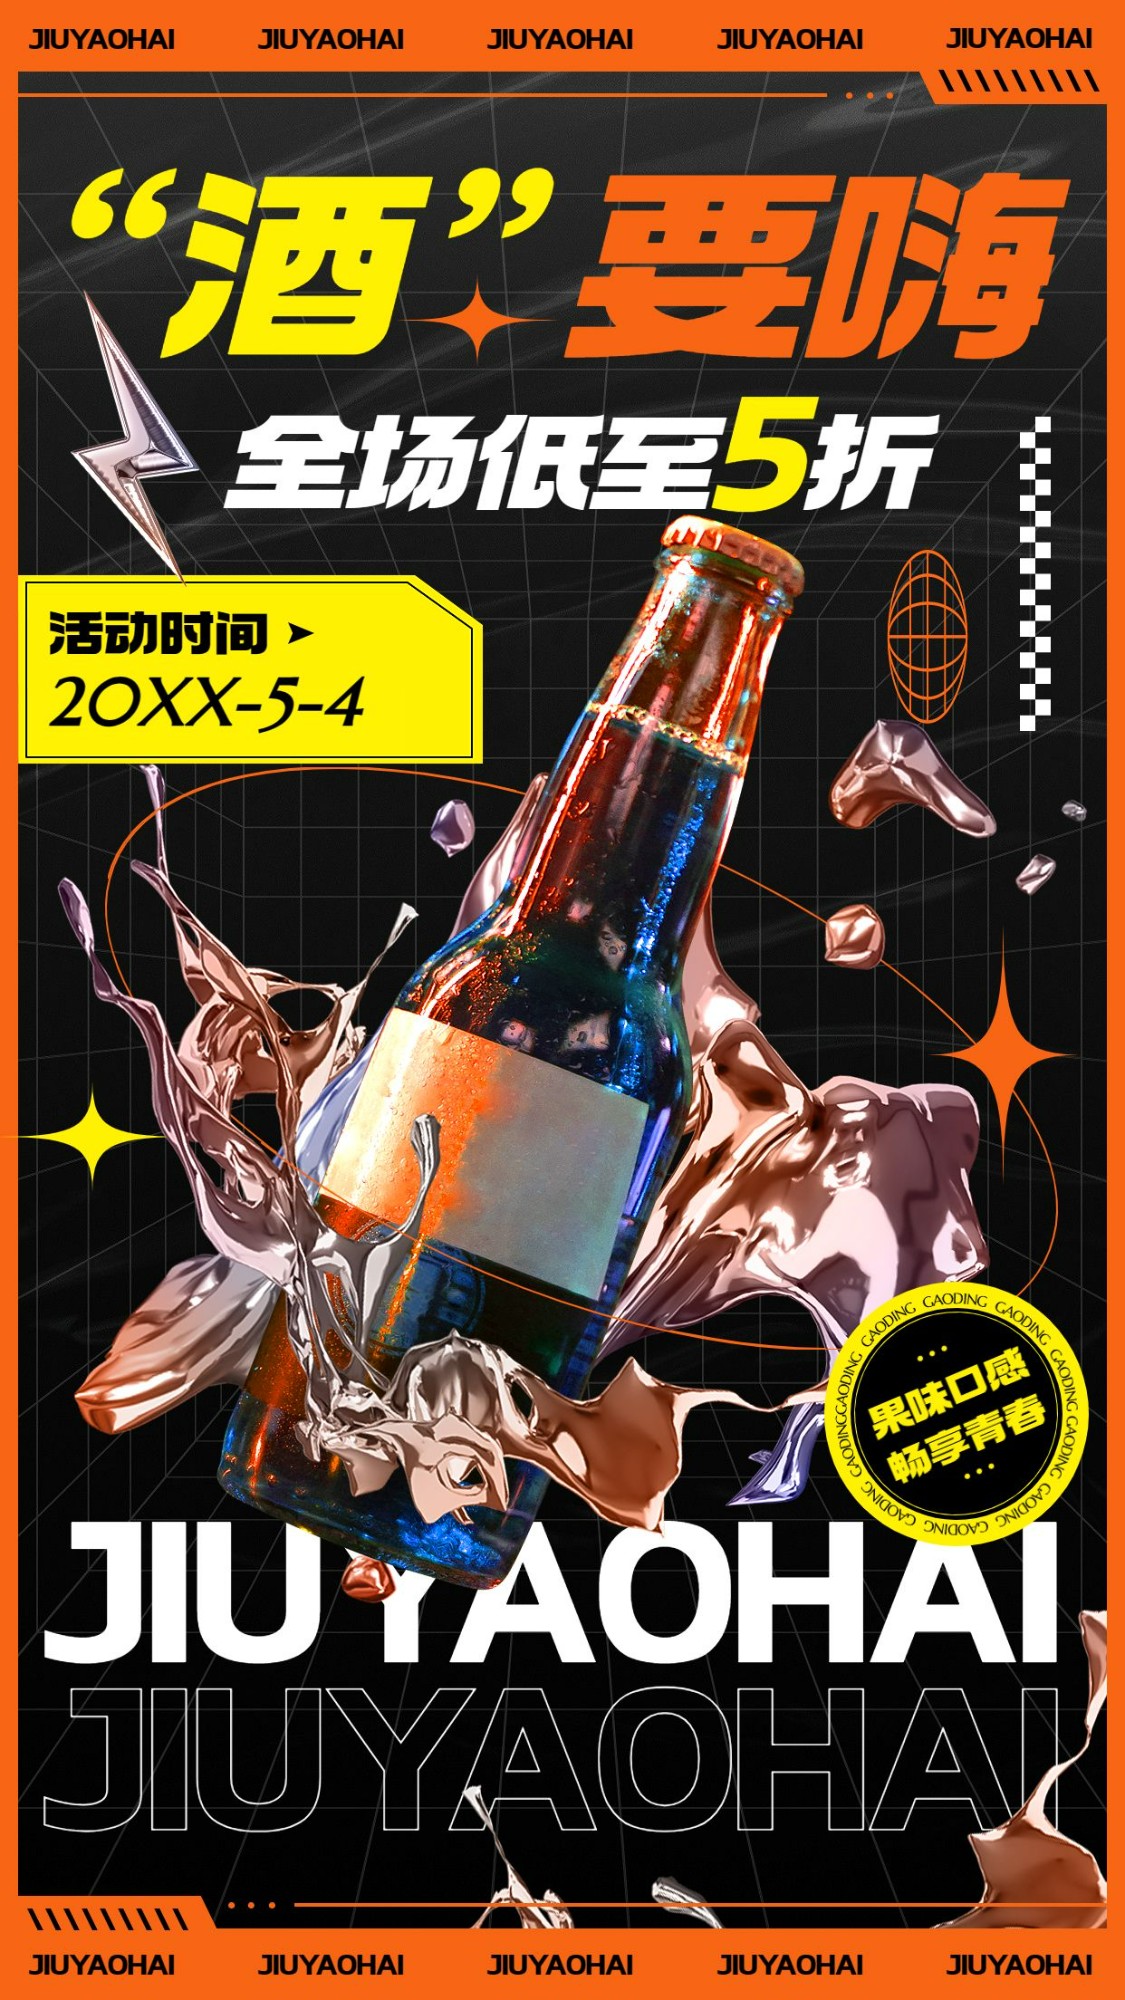 五四青年节果酒饮品产品营销手机海报